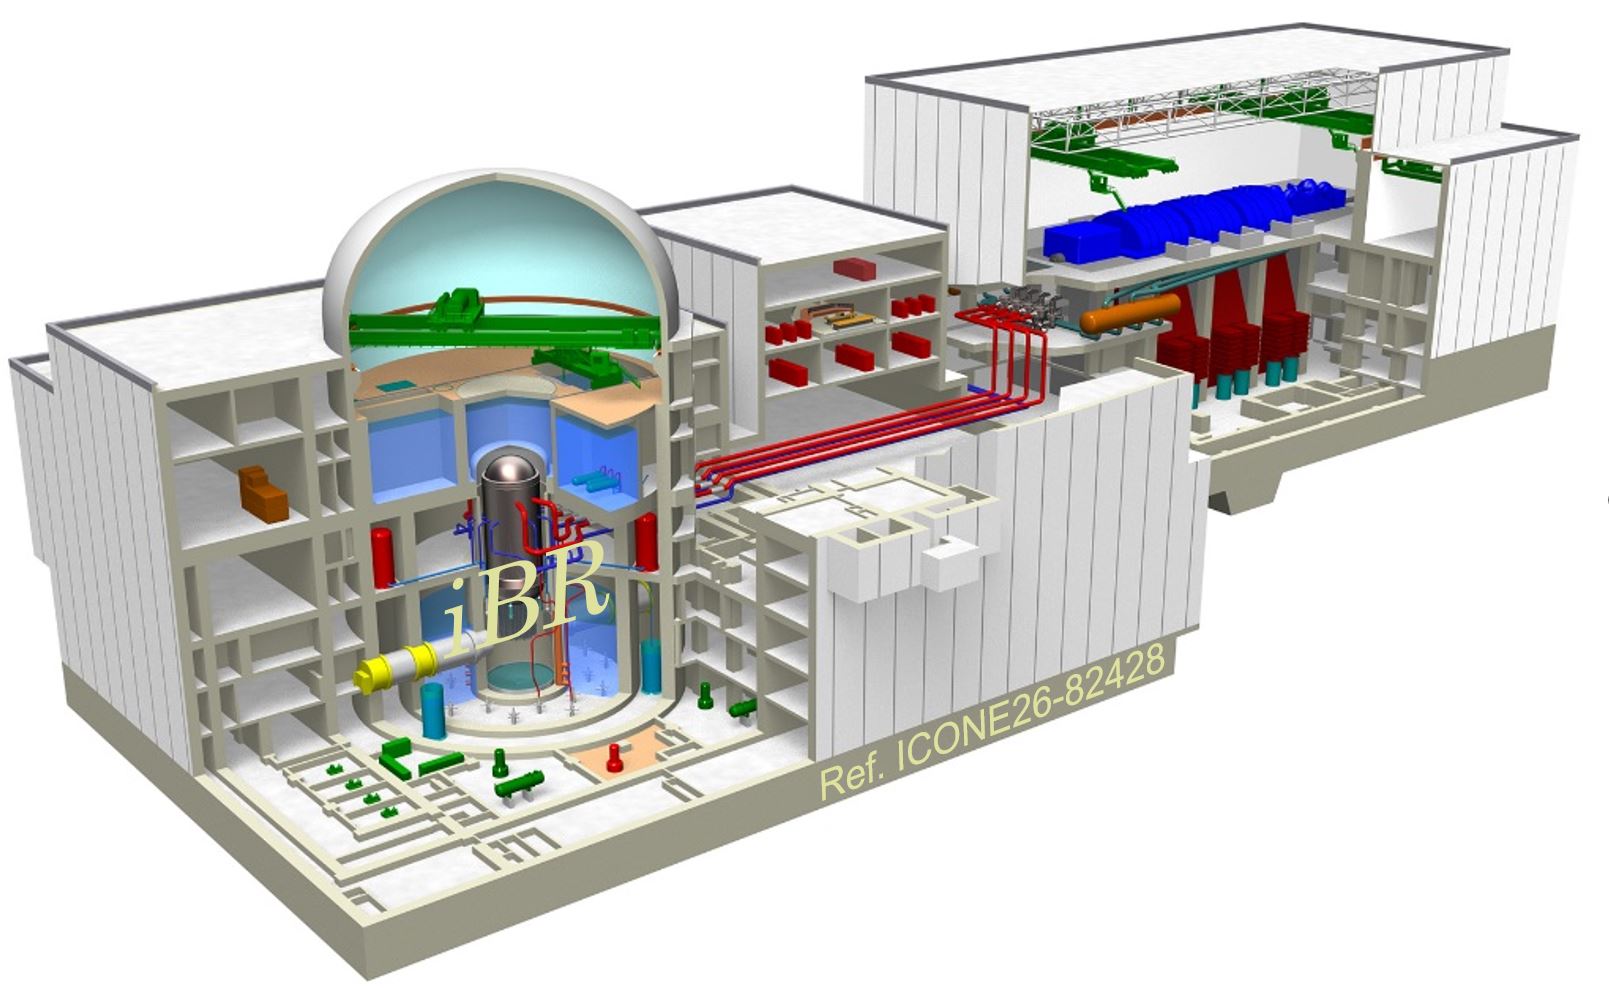 革新軽水炉（iBR）の全体概略図。静的安全システムや、水素を閉じ込める大容量の二重円筒格納容器など、地域社会と共生を可能とする革新的安全性能に加え高い電気出力と経済性と実現。